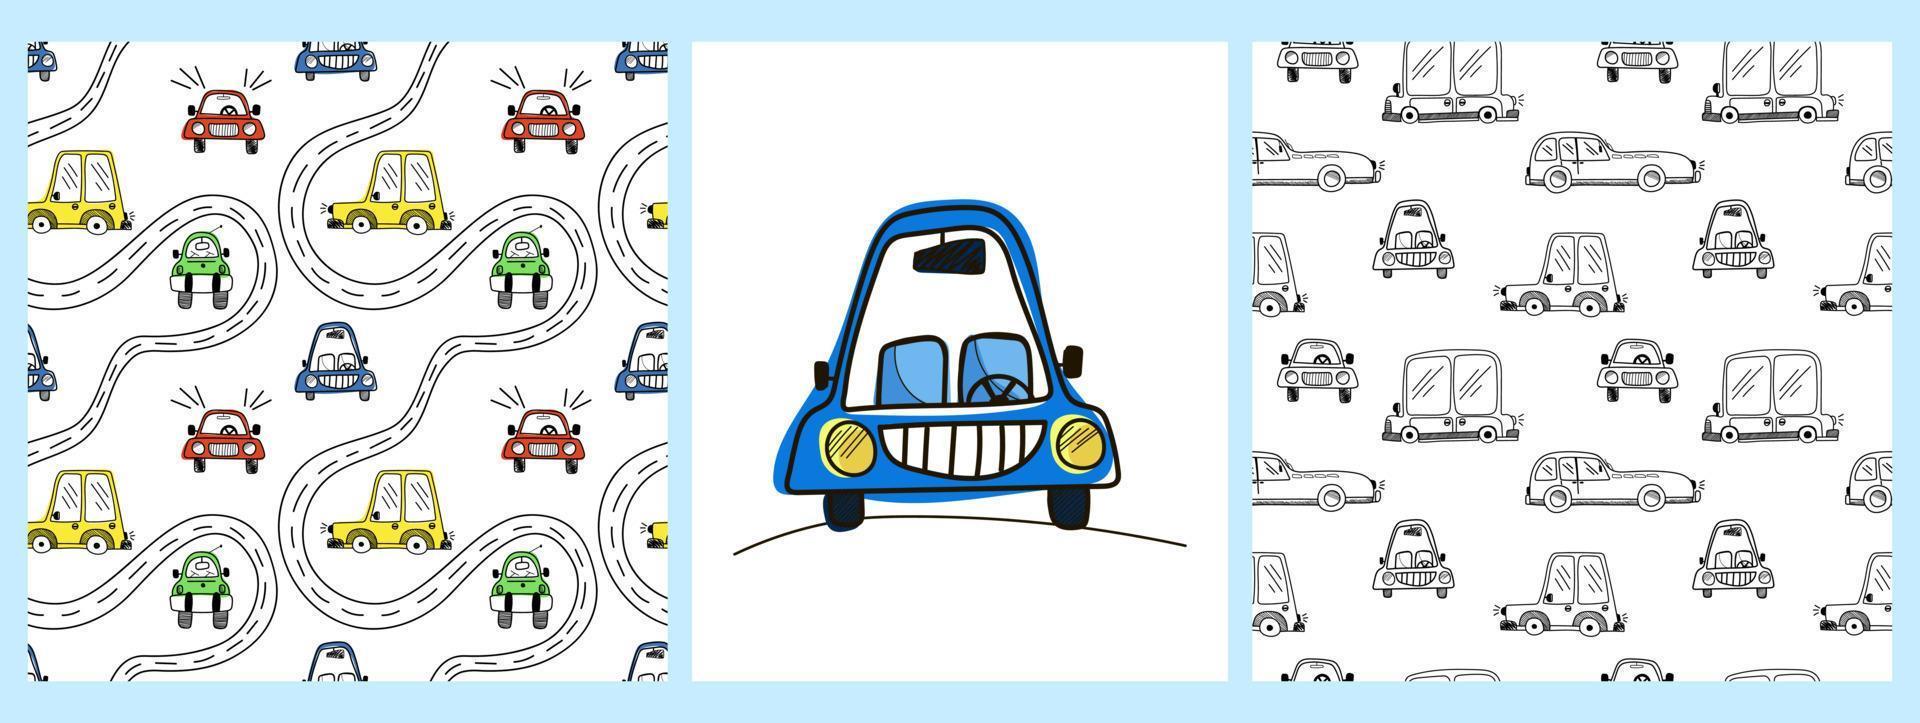 eine Reihe von Vektormustern und ein Poster mit farbenfrohen süßen Autos auf einem weißen Hintergrund im Doodle-Stil. Kinderillustration für Pyjamas, Kinderzimmer, Tapeten, Postkarten, Feiertage vektor